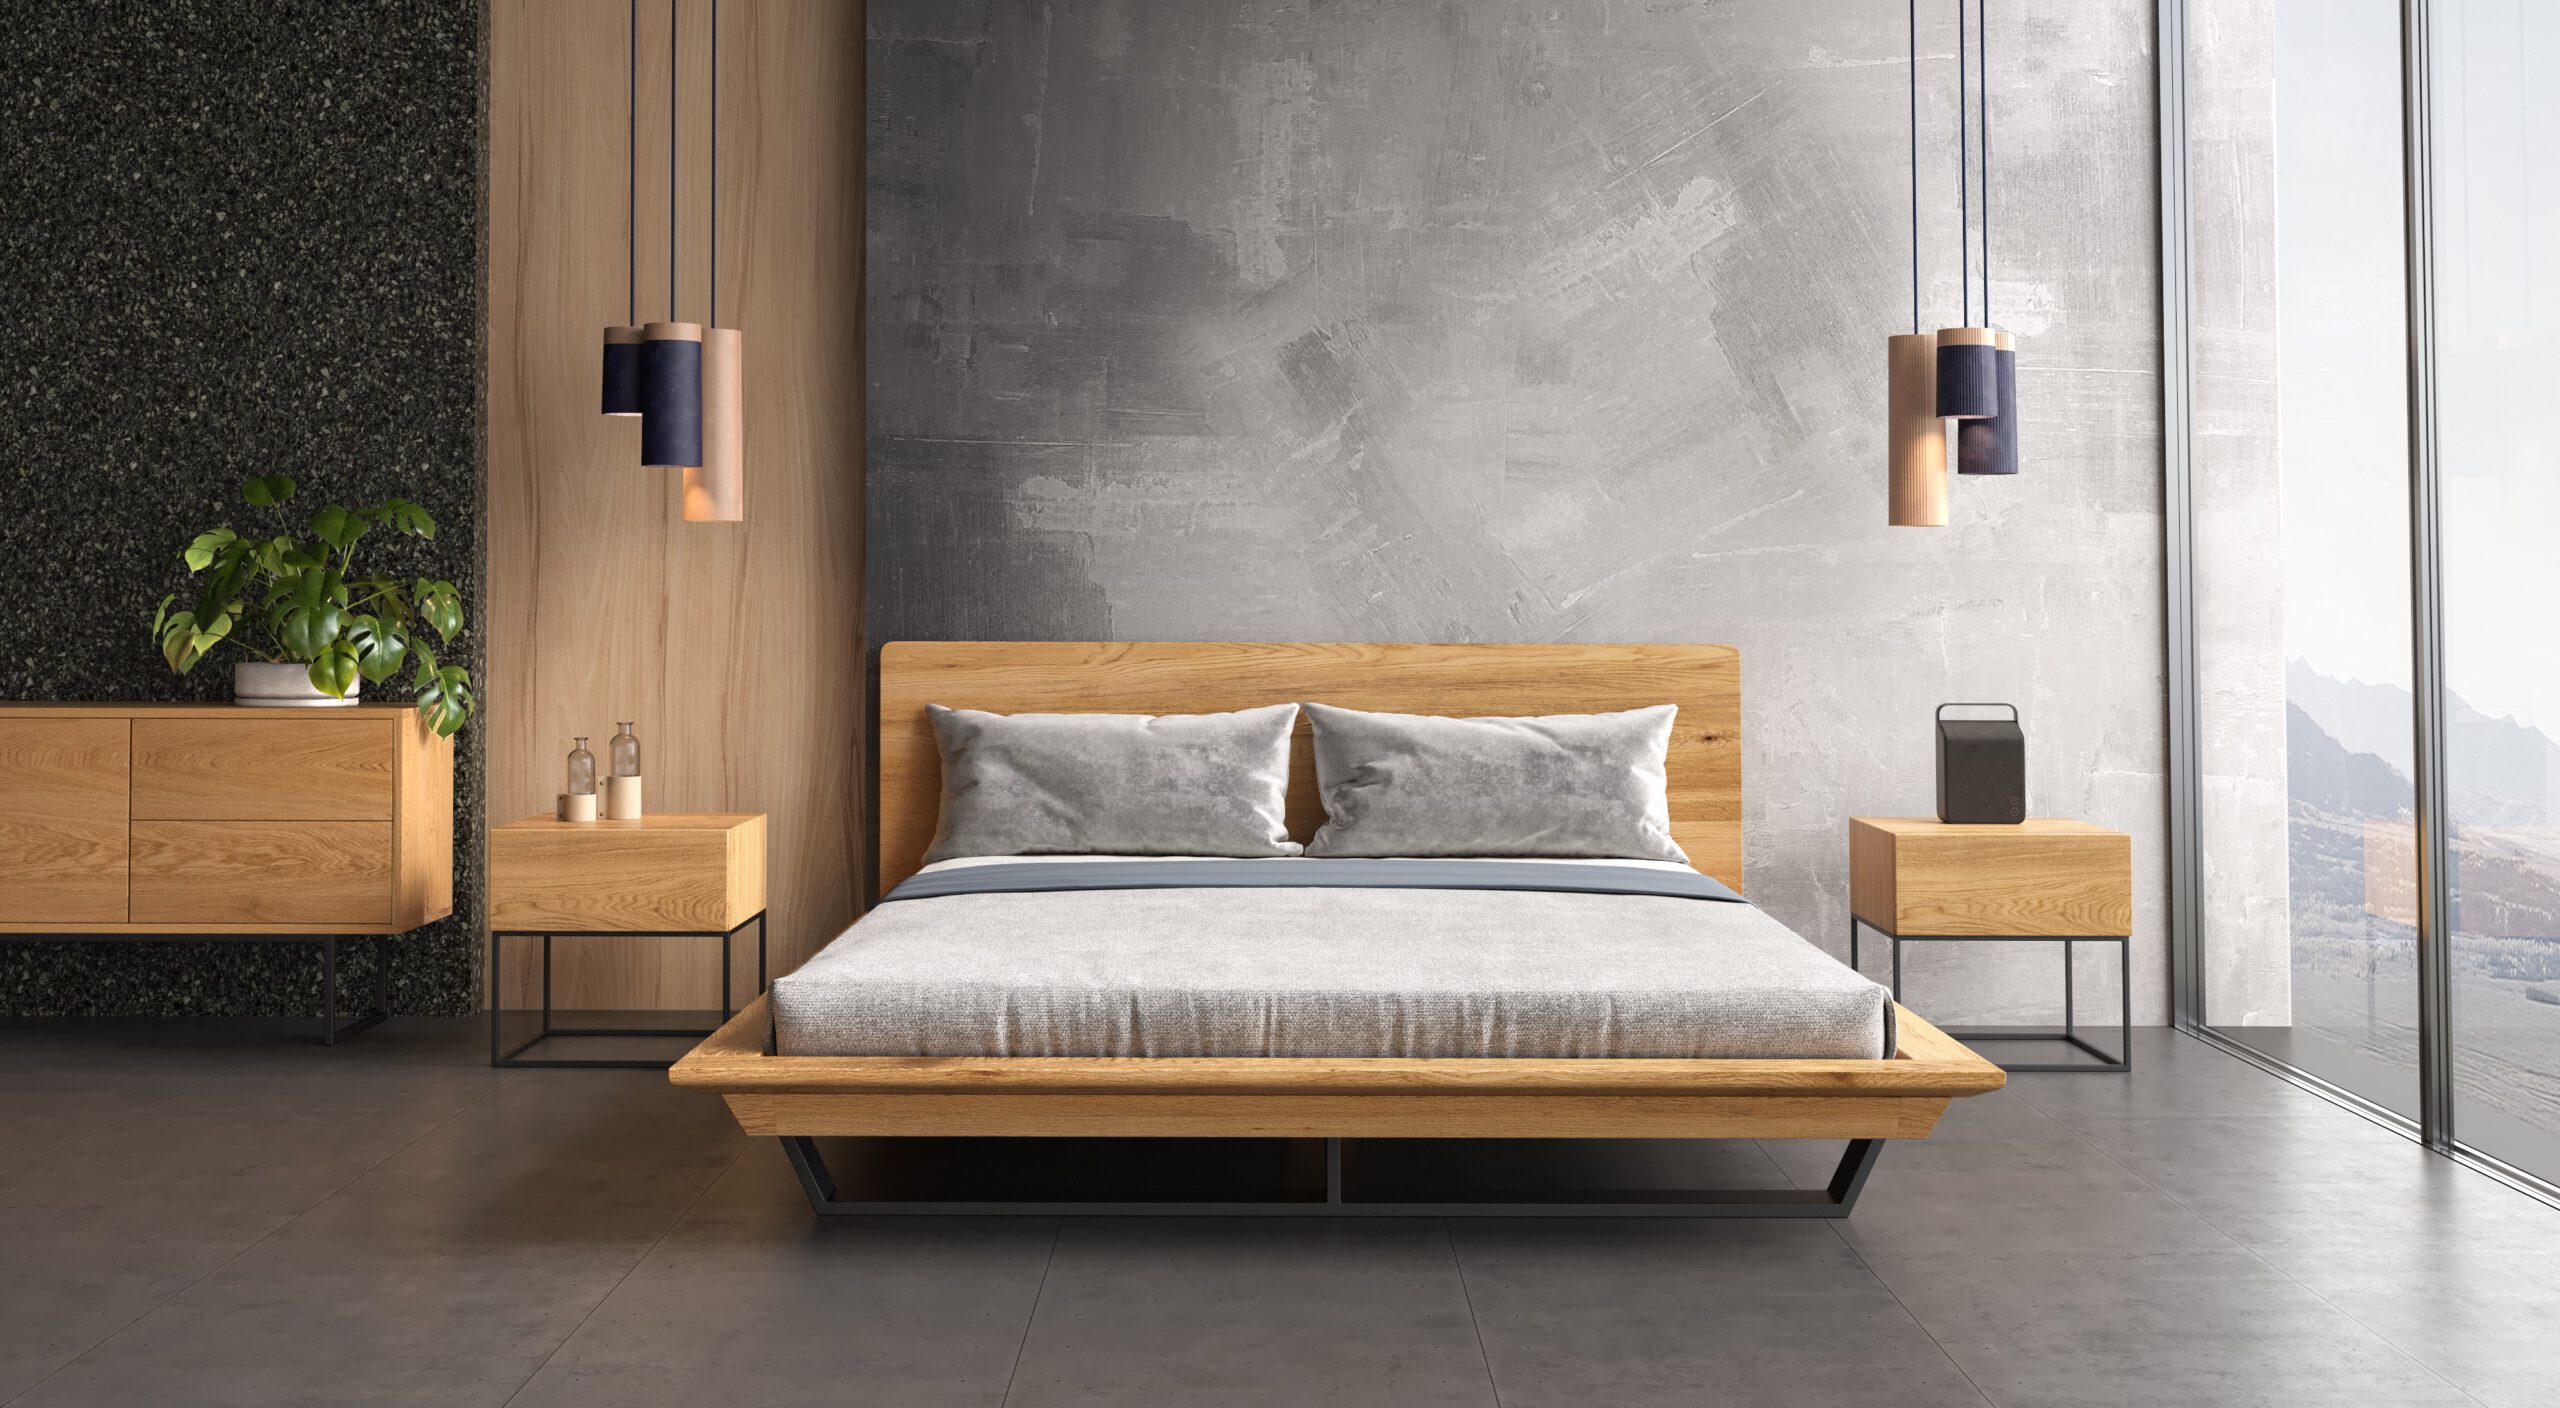 Łóżko Nova Slim wykonane z litego drewna i metalu.